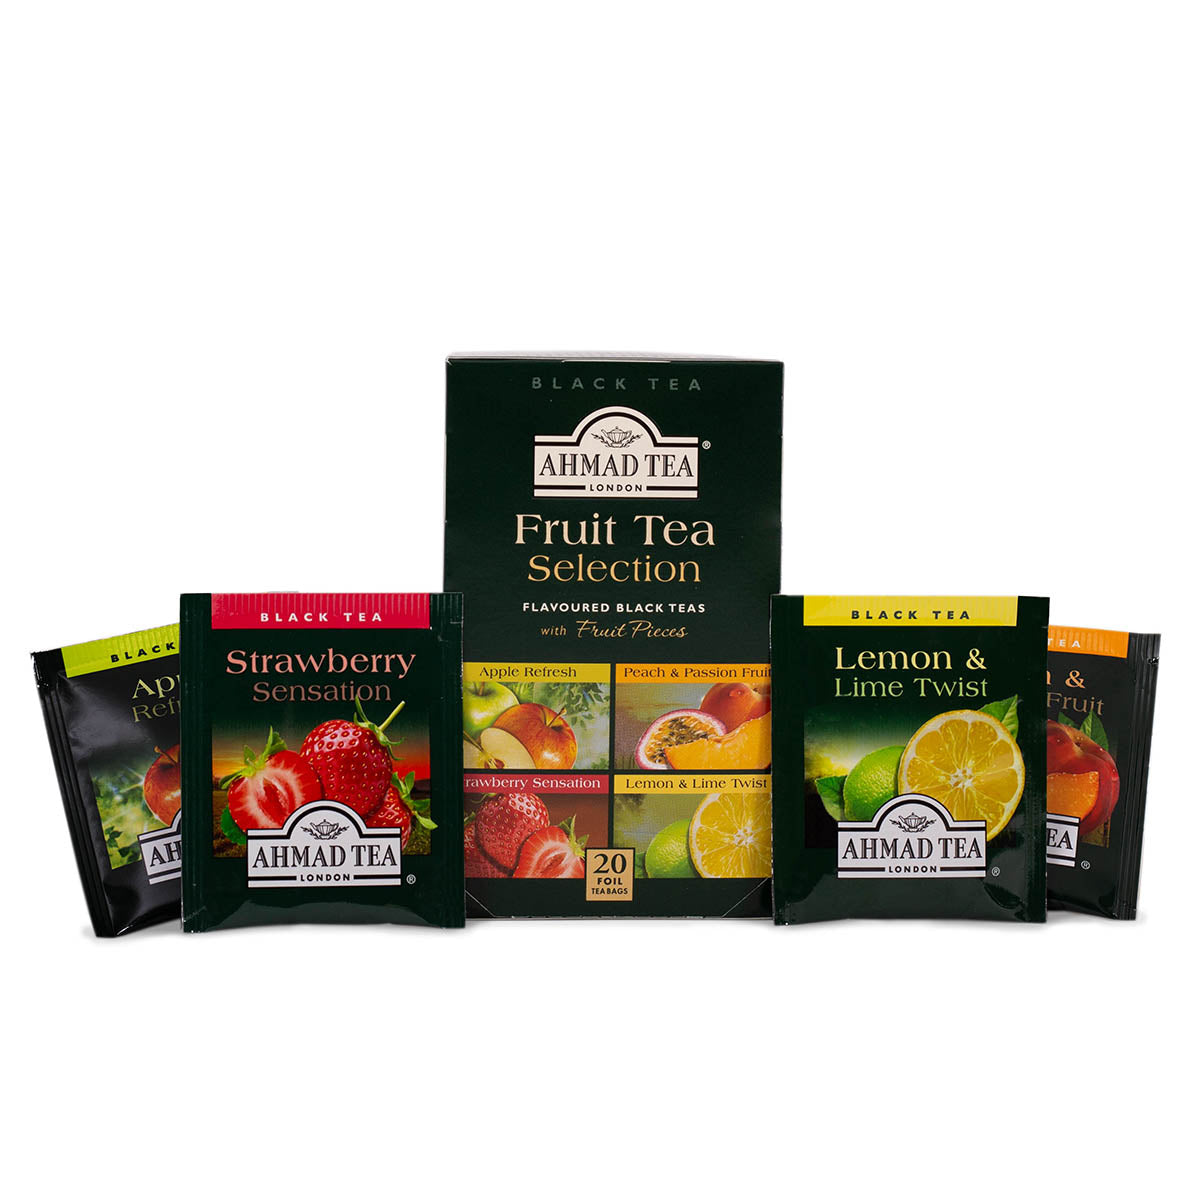 Fruit Tea Selection | Confezione mista di tè alla frutta | 20 bustine per confezione | Cartone da 6